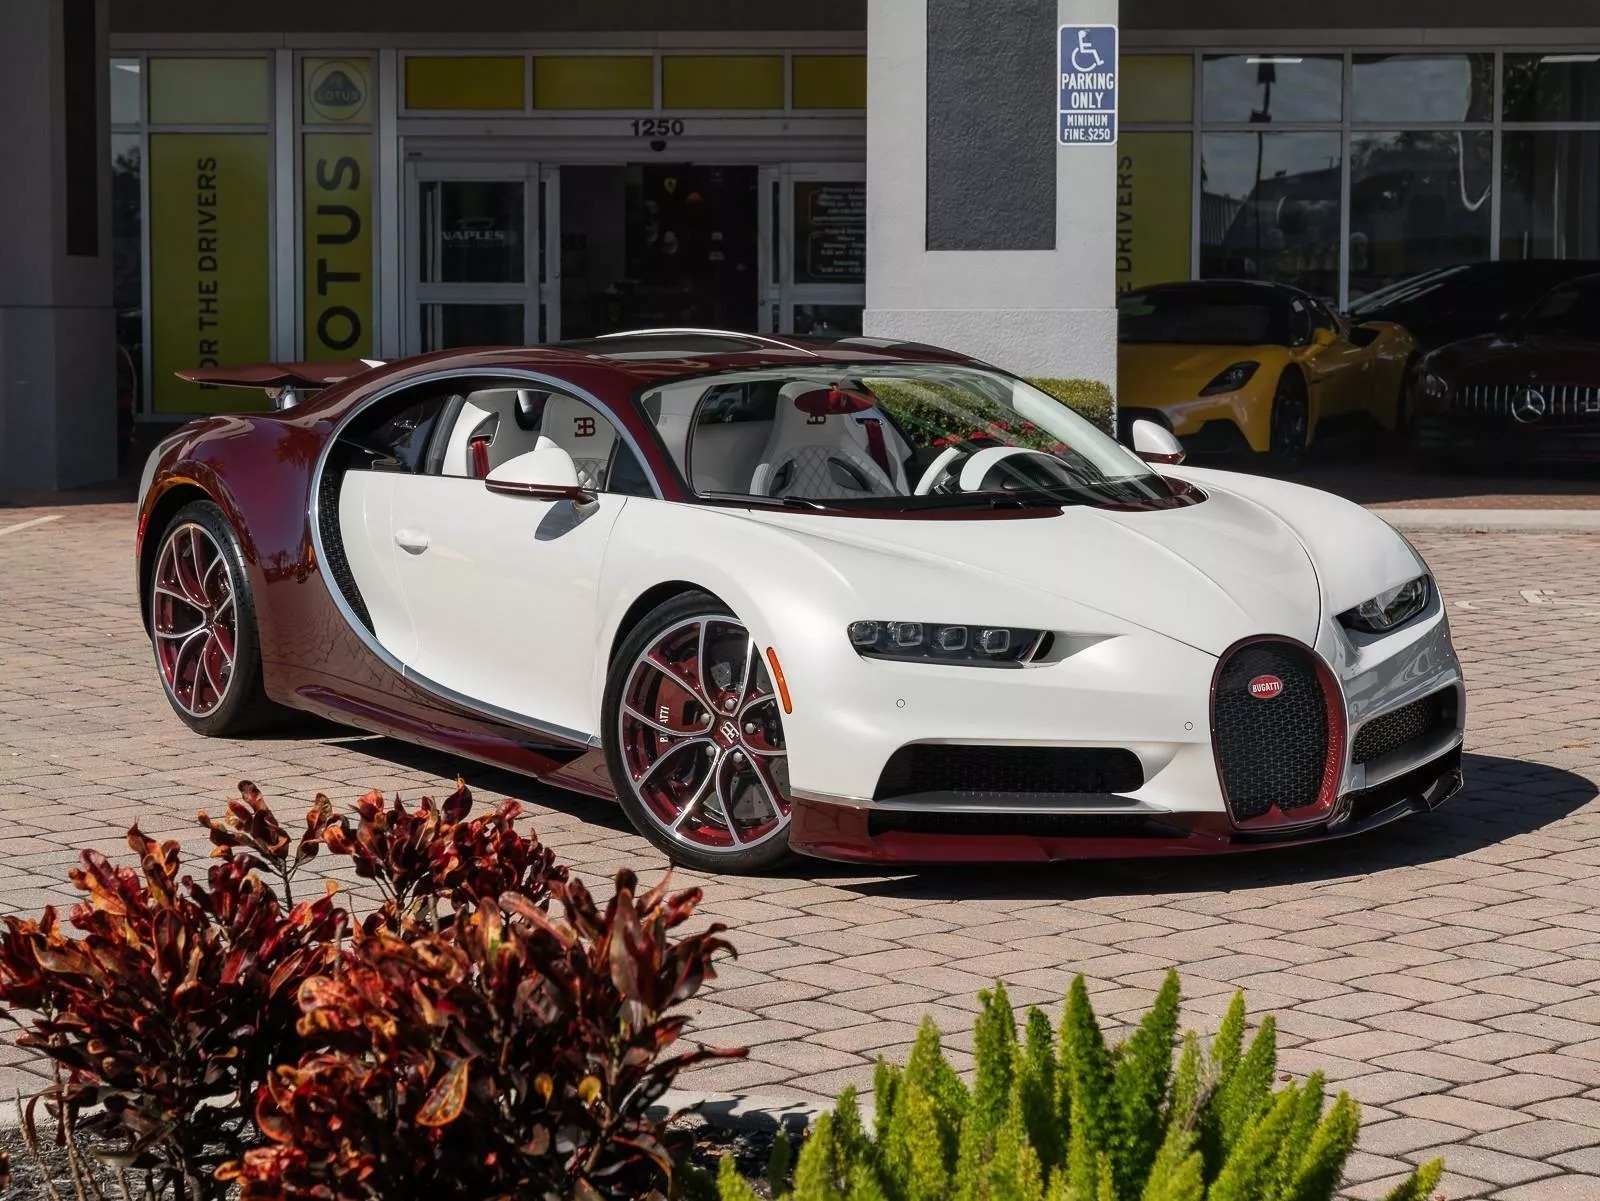 Rao bán Bugatti Chiron giá quy đổi hơn 95 tỷ đồng, chủ xe hứa tặng kèm Rolls-Royce Wraith hợp tông màu- Ảnh 1.